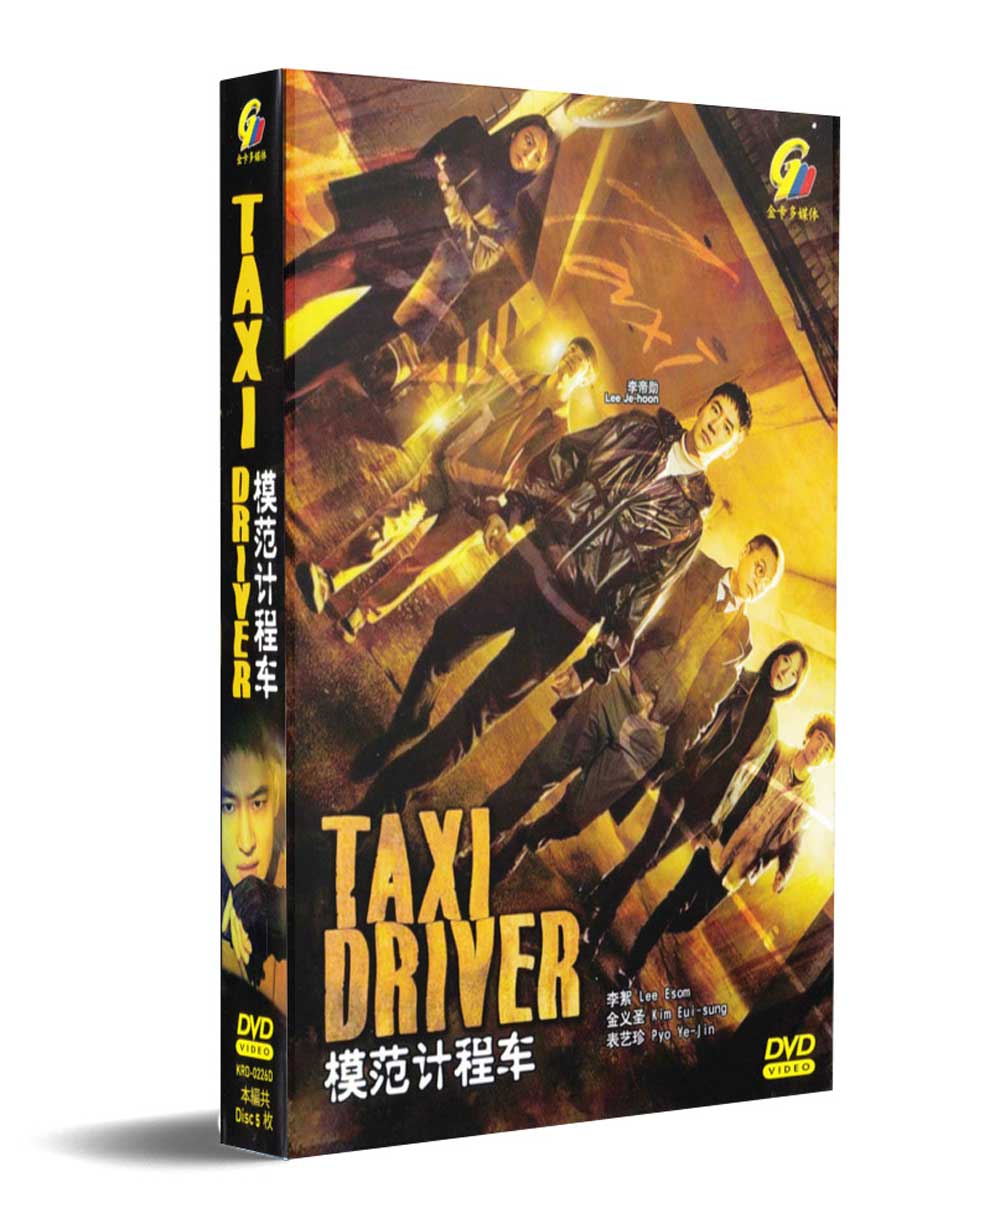 Taxi Driver (DVD) (2021) 韓国TVドラマ